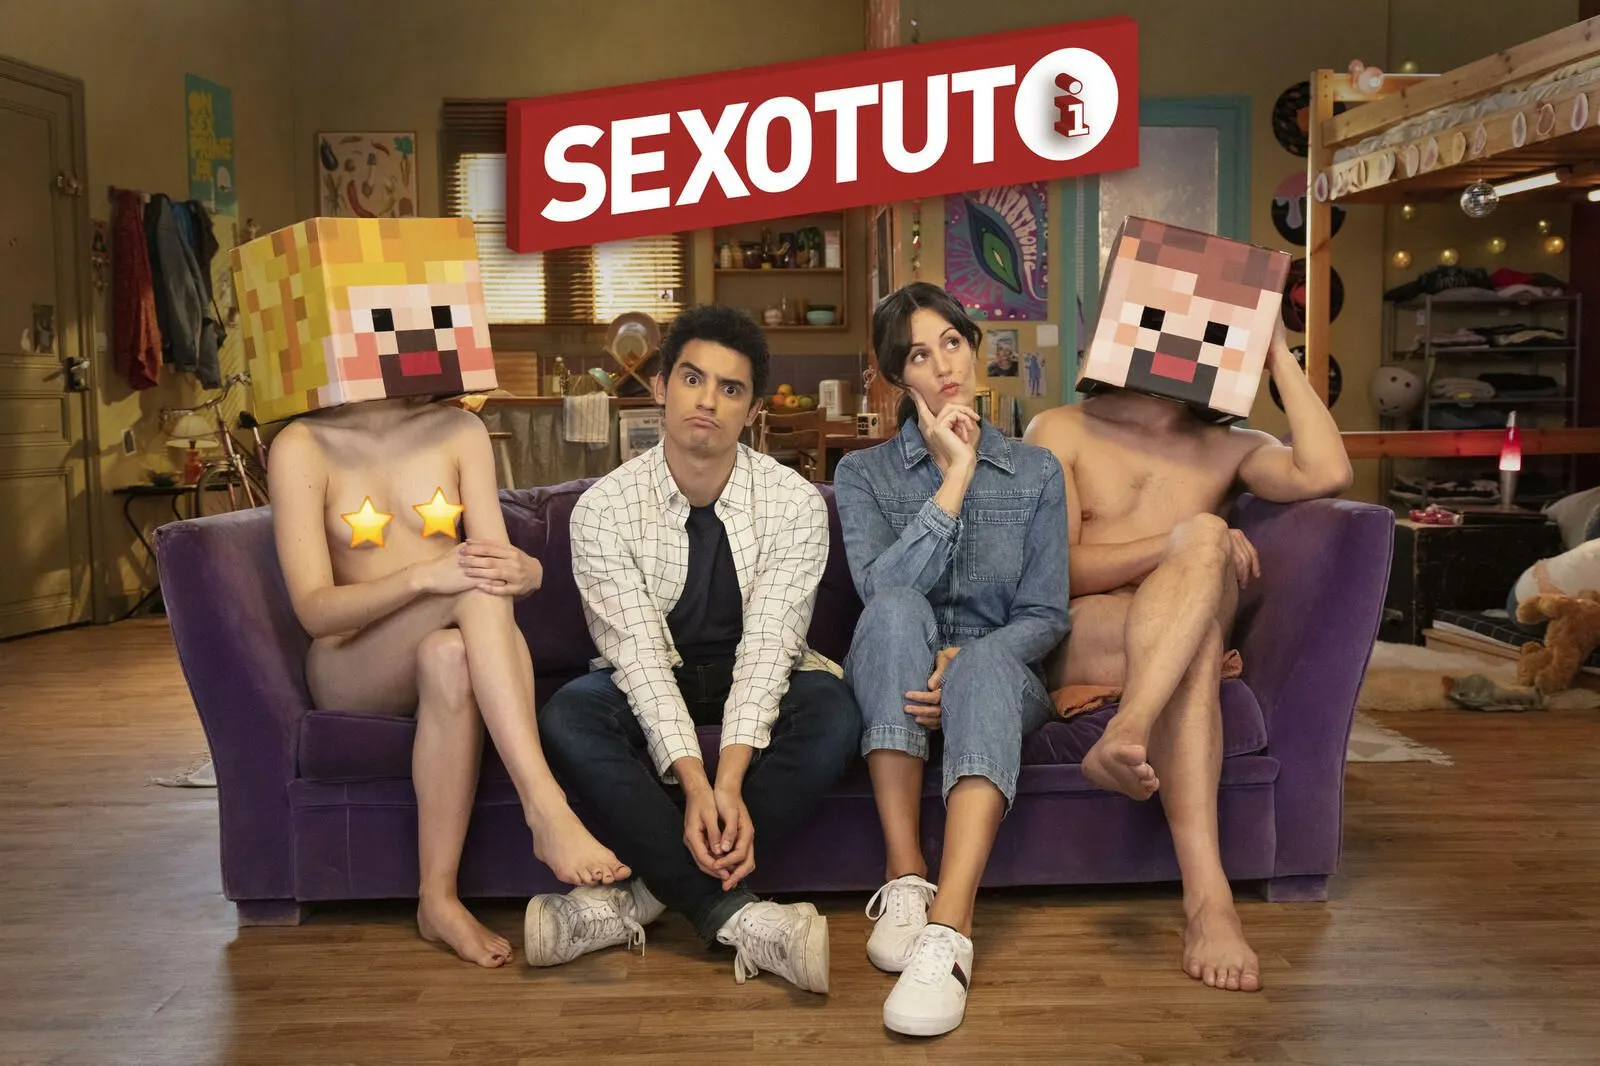 Le Sexotuto sur « Les dangers liés aux écrans »